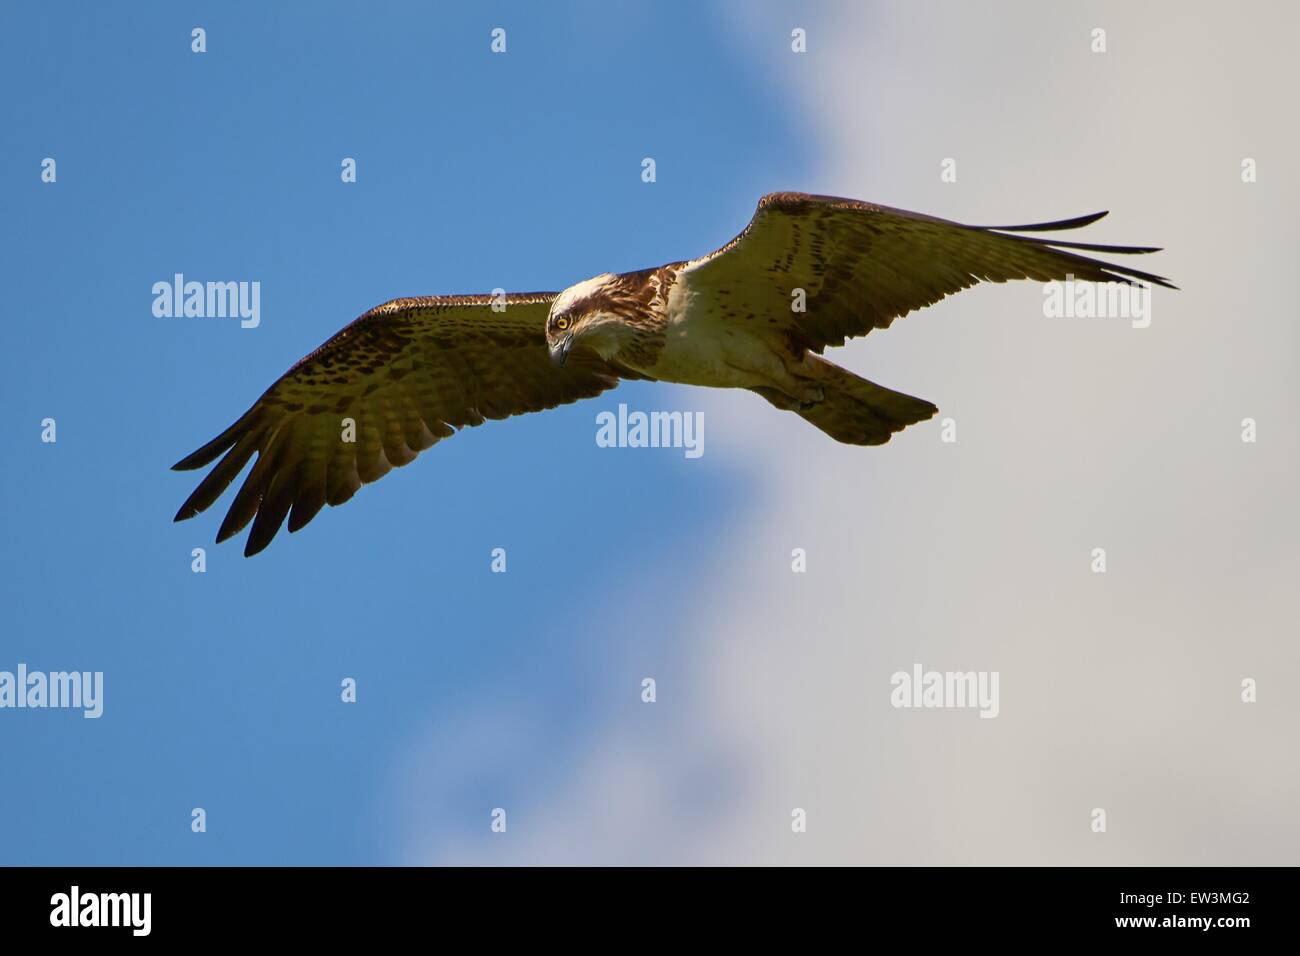 Caccia osprey volare nel cielo blu con alcune nuvole. Questo rapace è la ricerca del prossimo pasto nell'acqua. Foto Stock